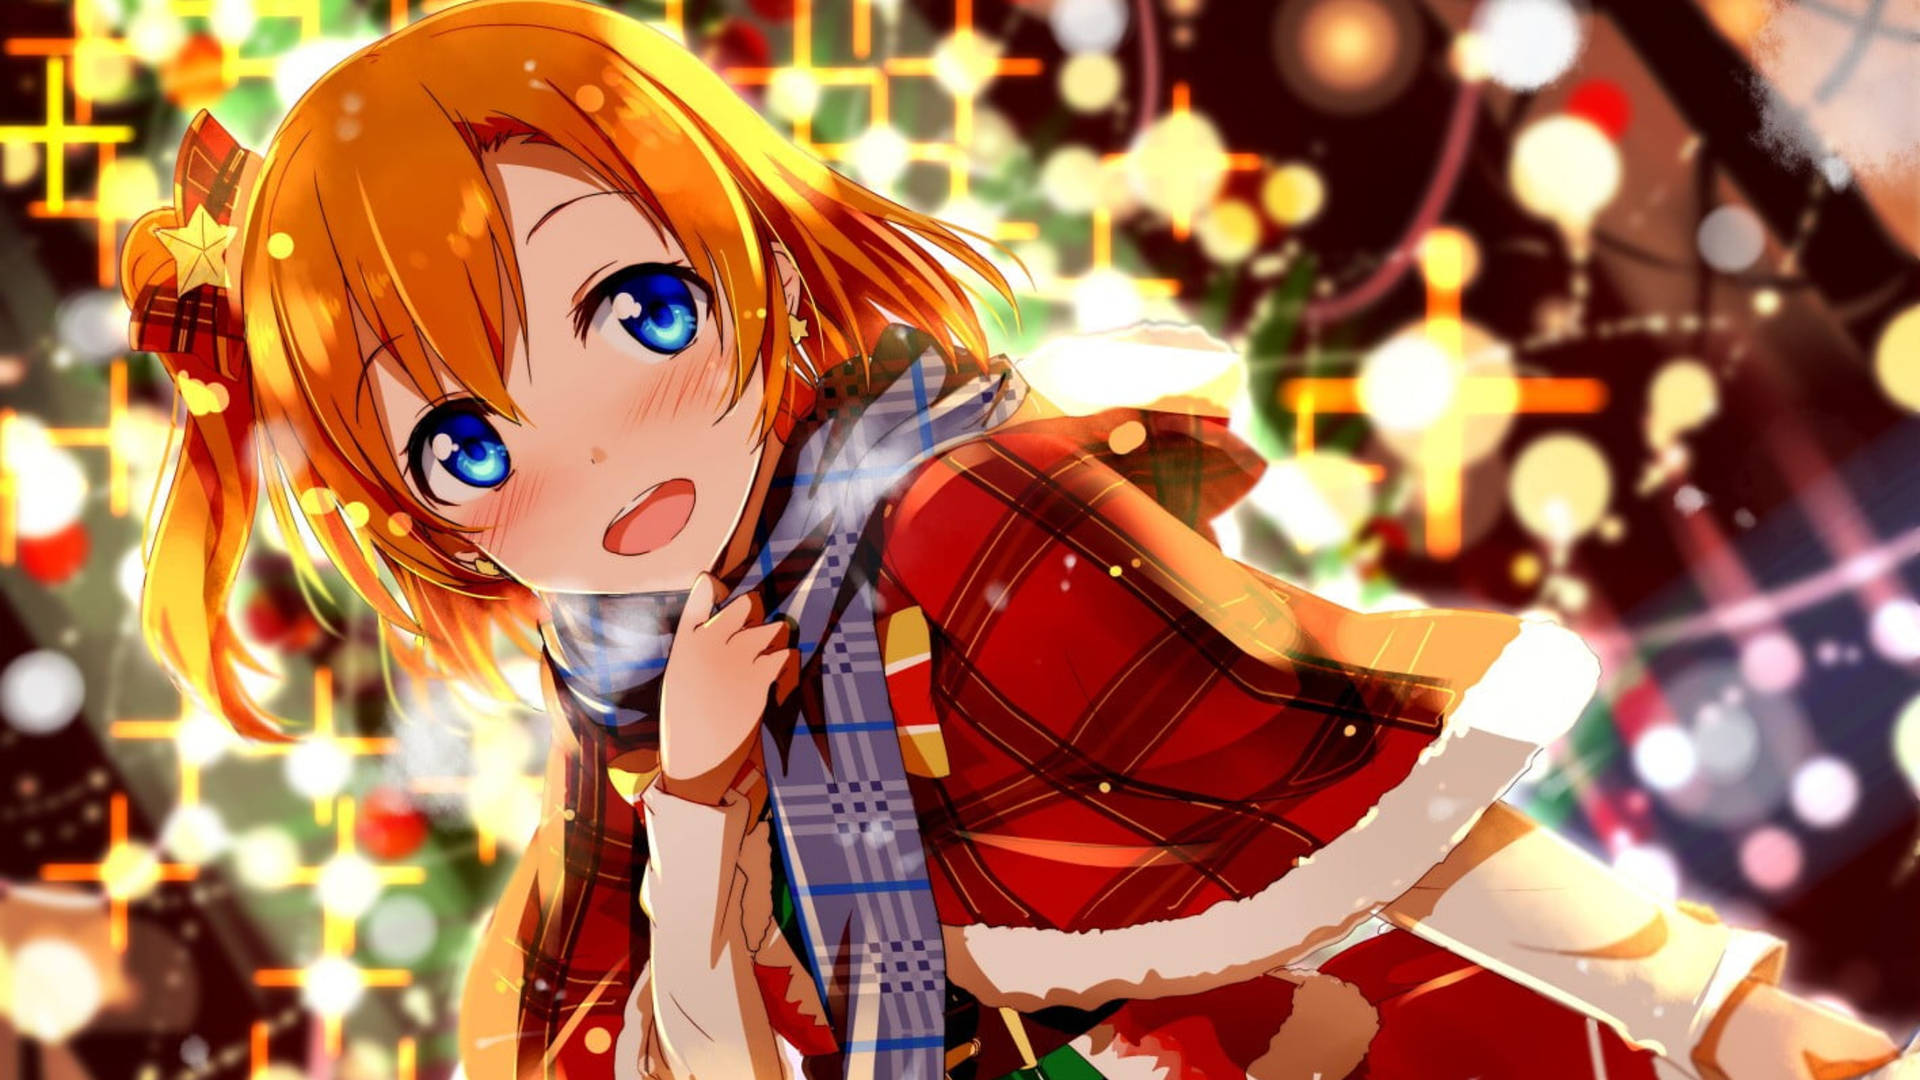 Glowing Light Girl Anime Christmas Wallpaper